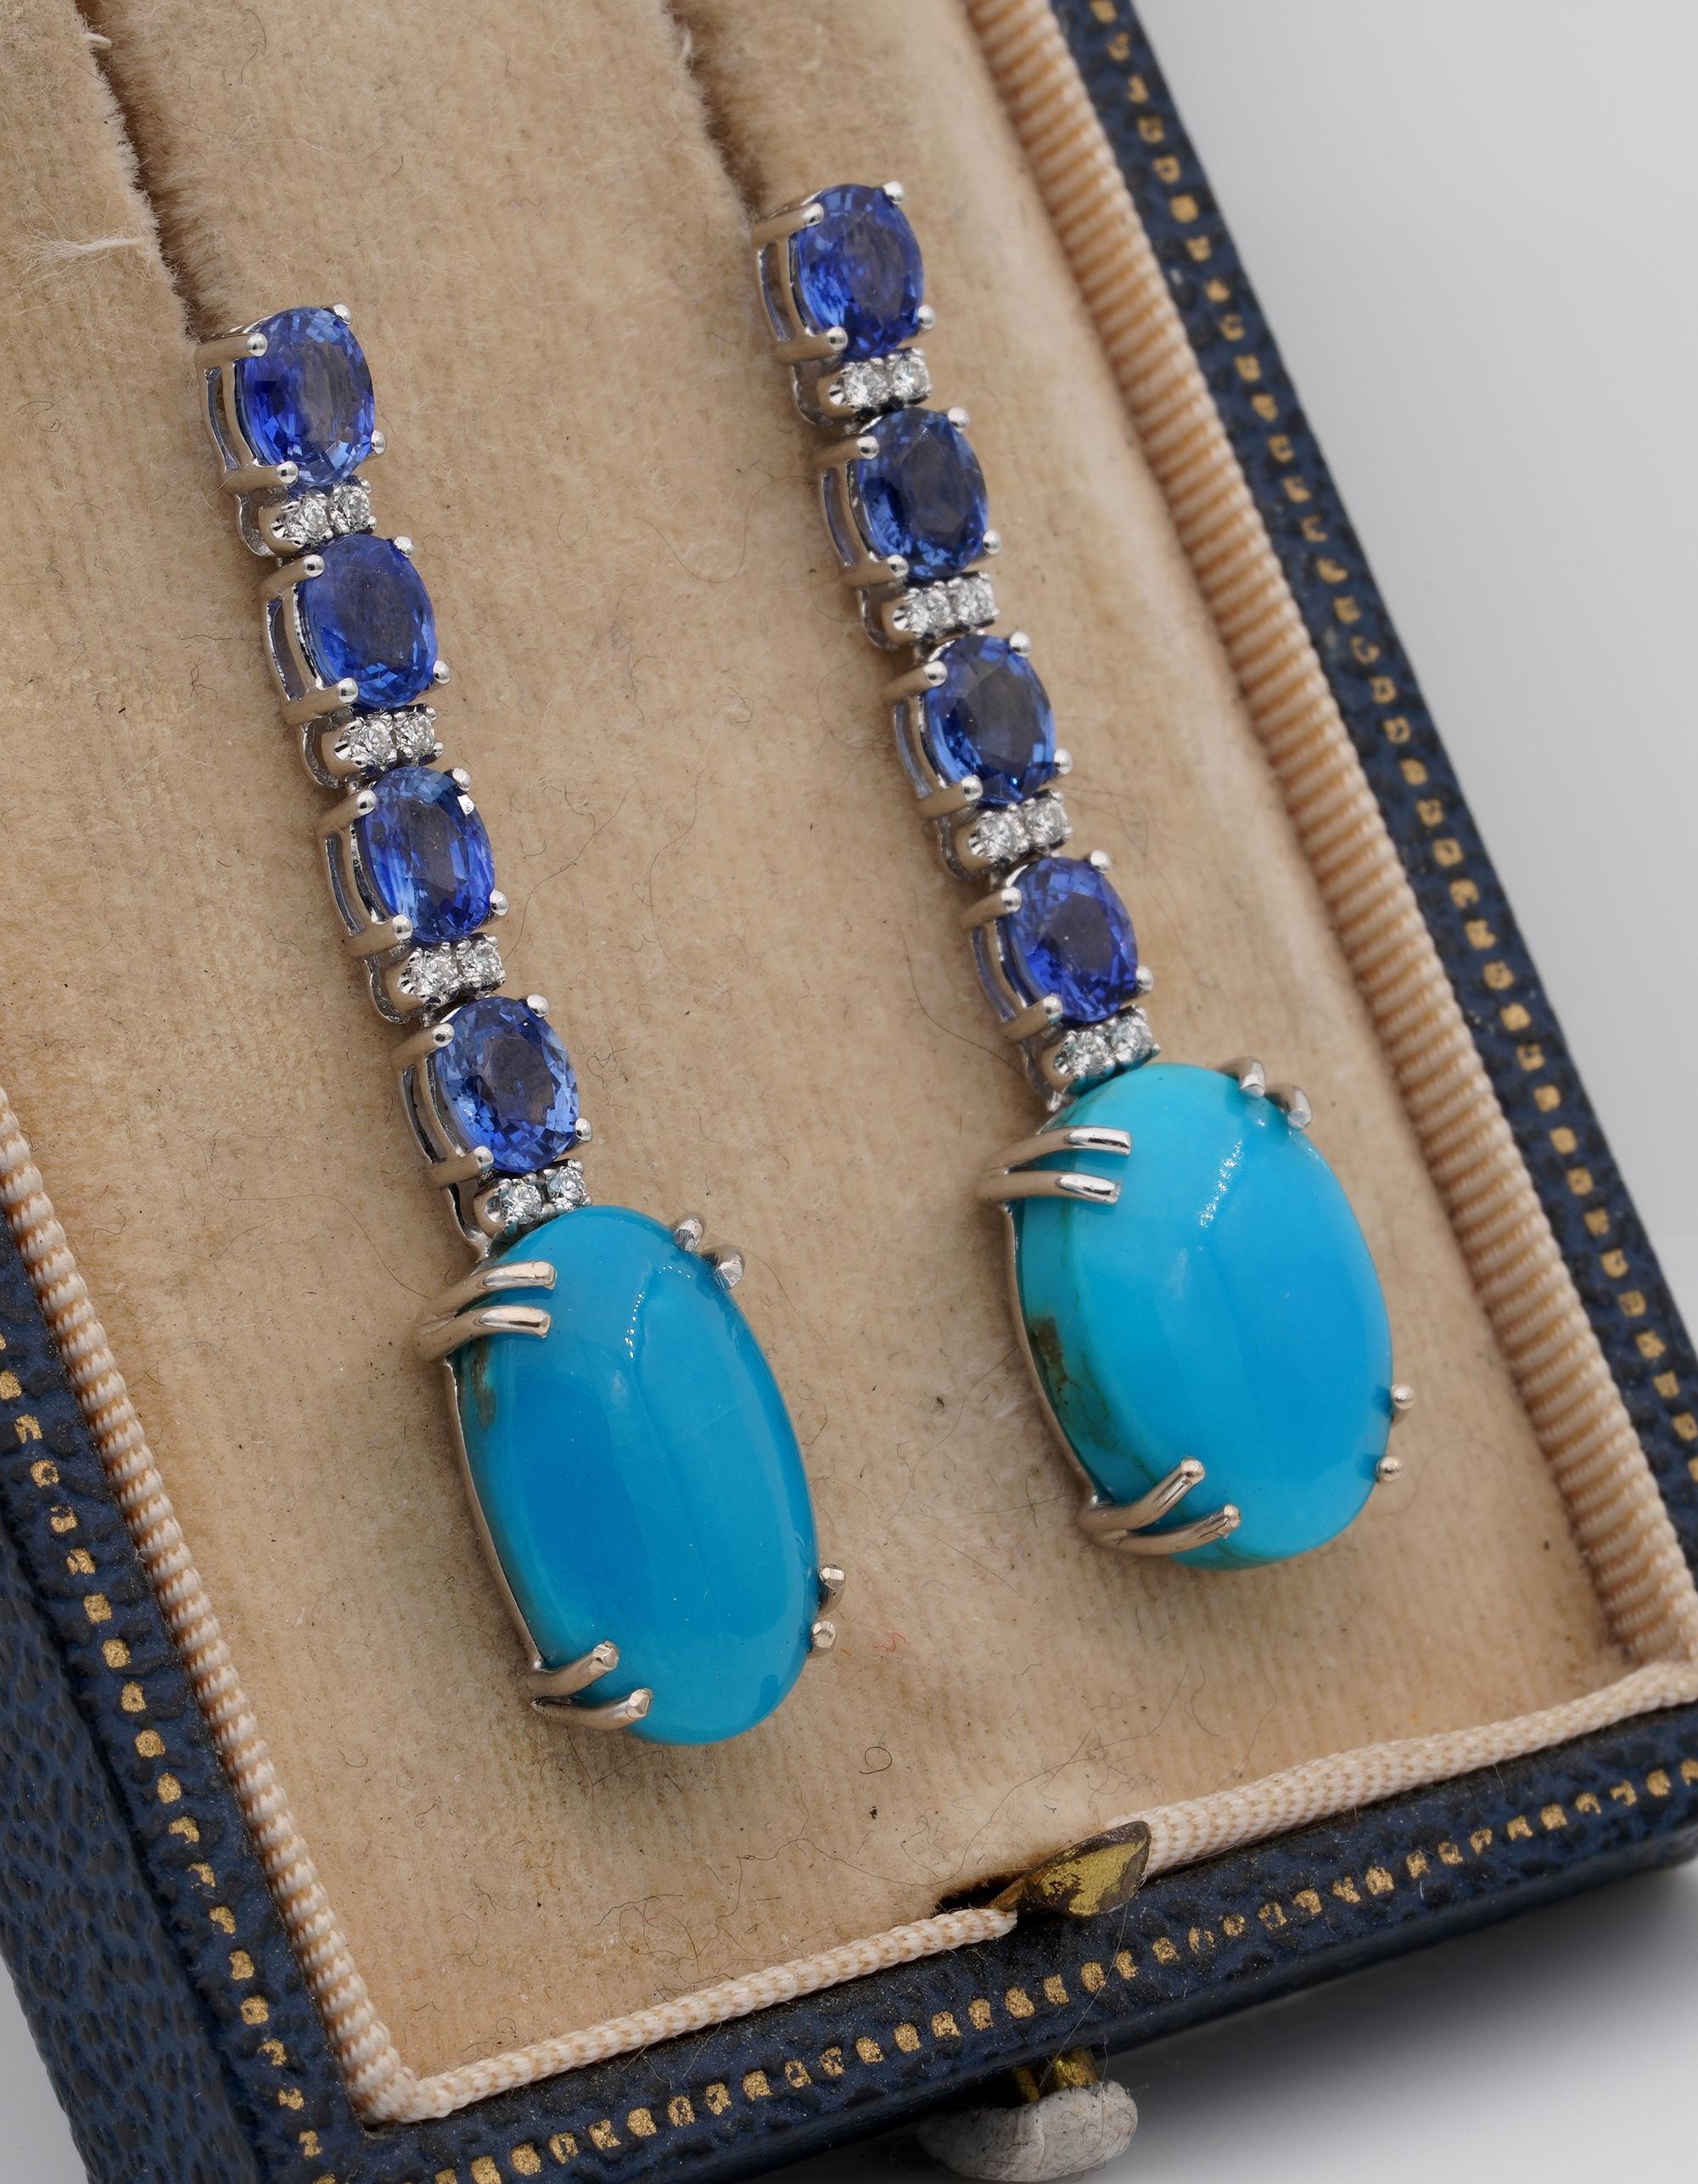 Magische blaue Farbtöne
Diese Vintage-Ohrringe aus dem Jahr 1960 sind ein Zeichen der Unterscheidung
Handgefertigt aus massivem 18 KT Gold in einem geschmackvollen Design, das zu jeder Zeit passt
Eine Reihe ausgewählter natürlicher NO HEAT Ceylon